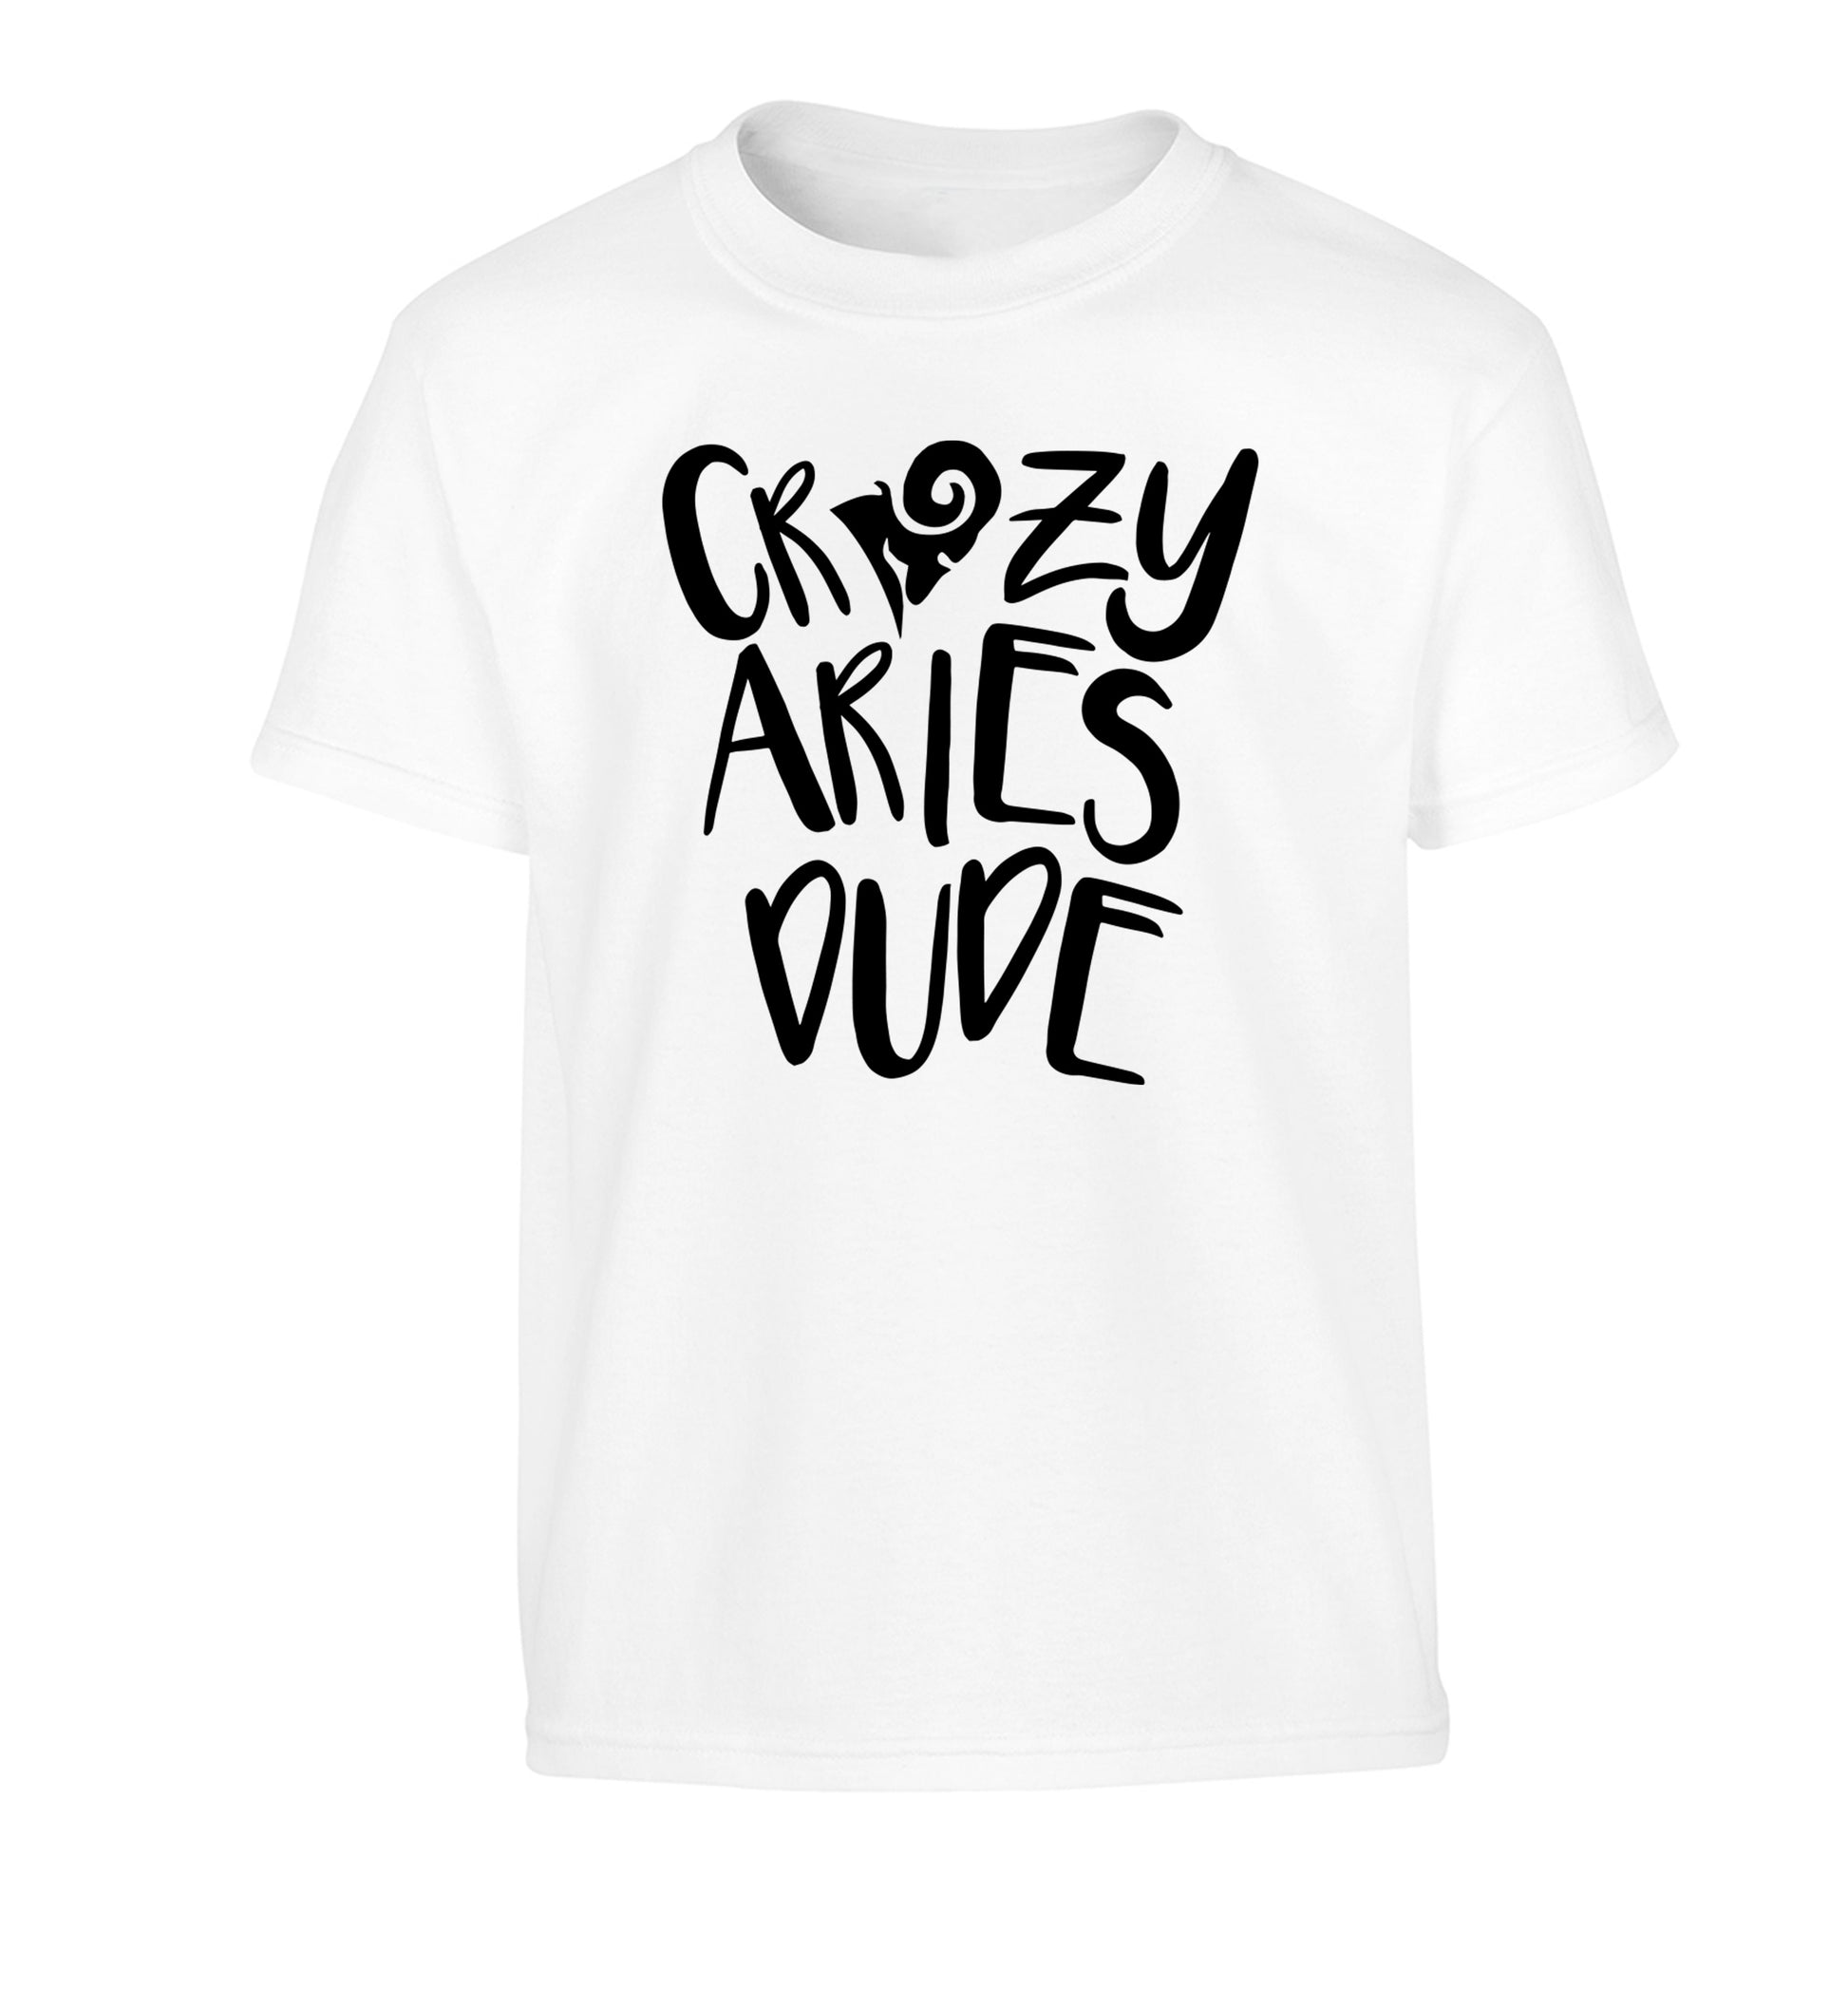 Crazy aries dude Children's white Tshirt 12-13 Years